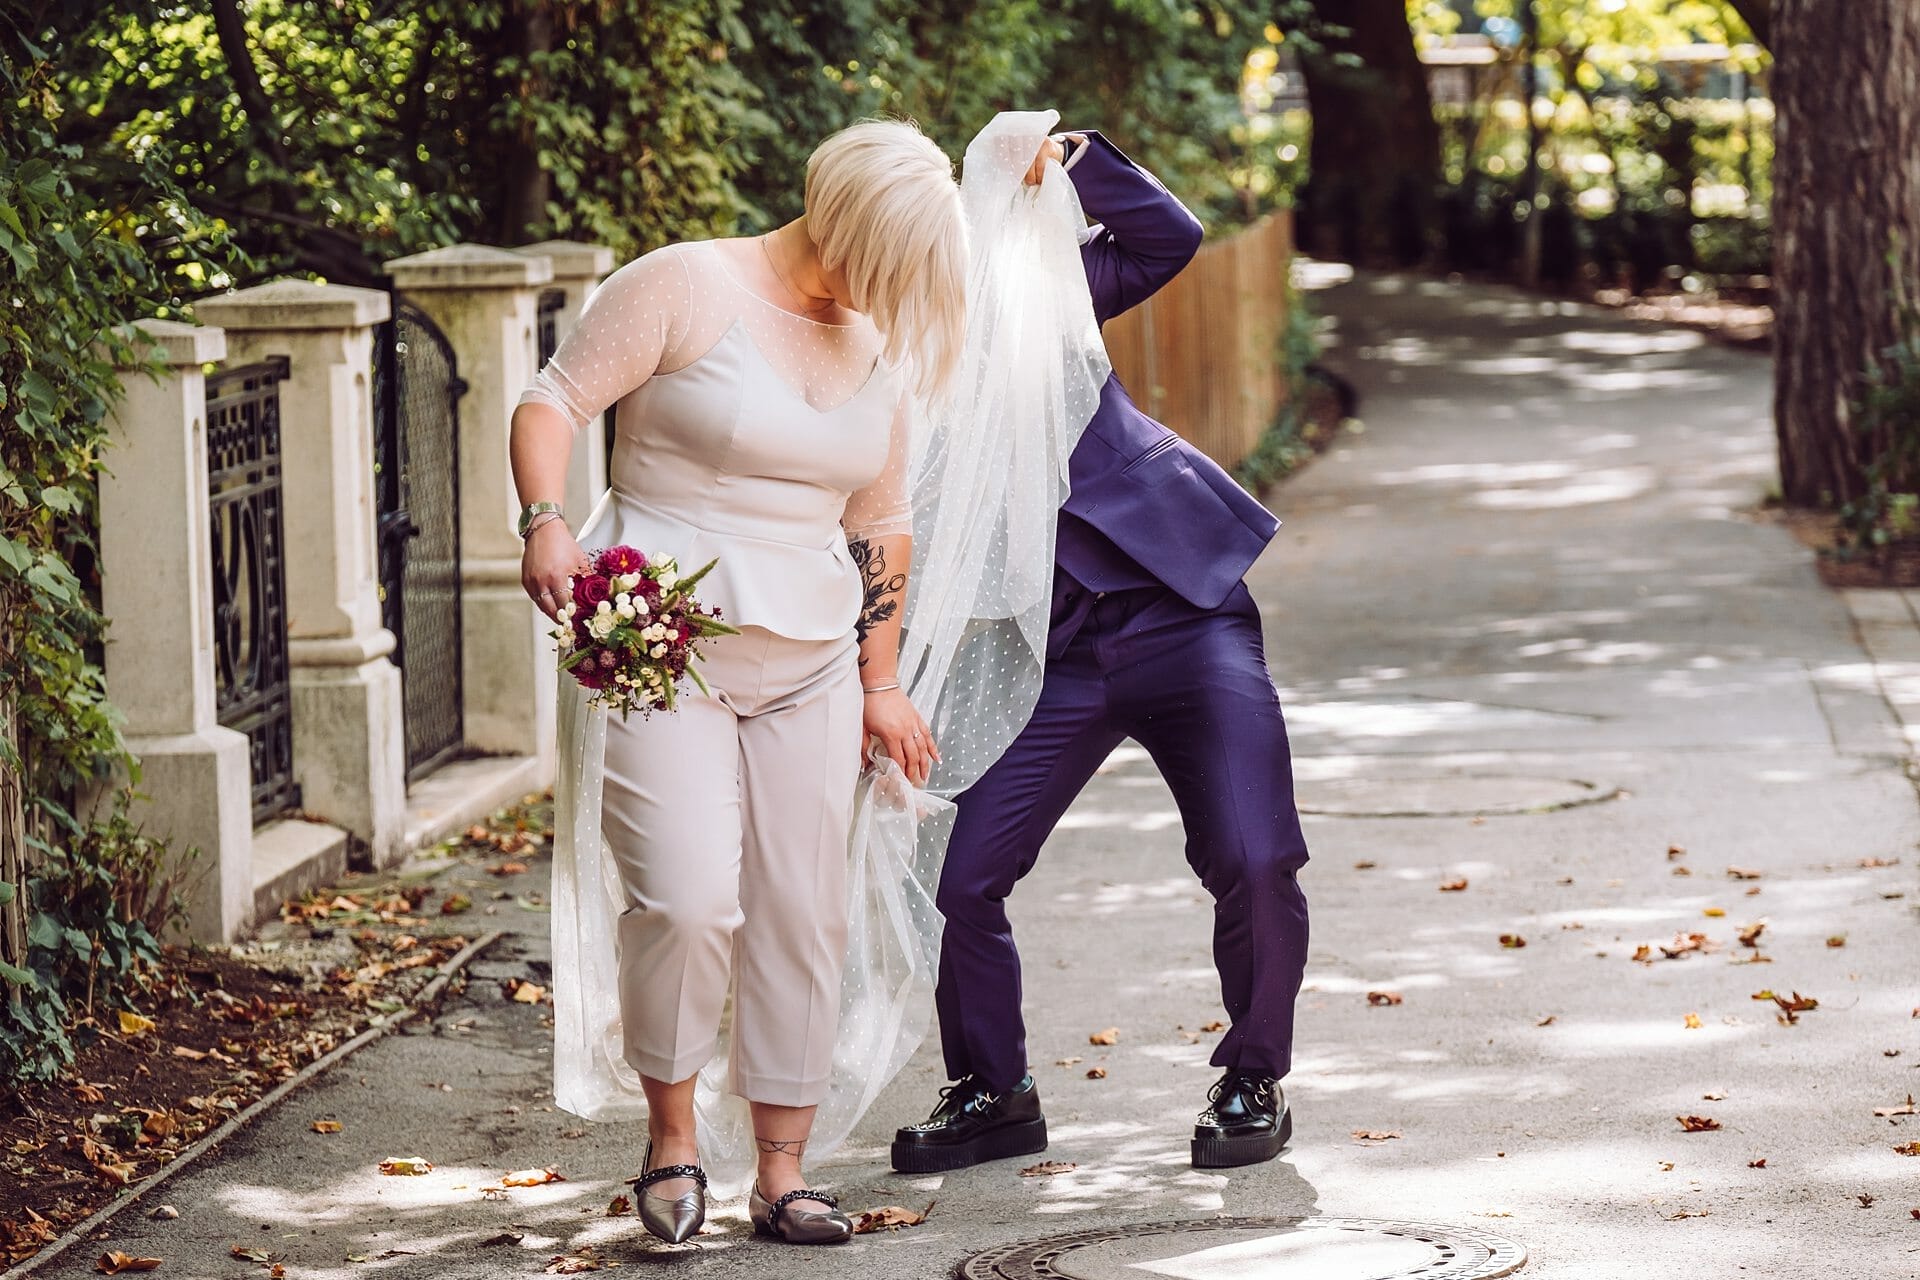 Eine Braut und ein Bräutigam stehen mit einem Schleier auf einem Bürgersteig.